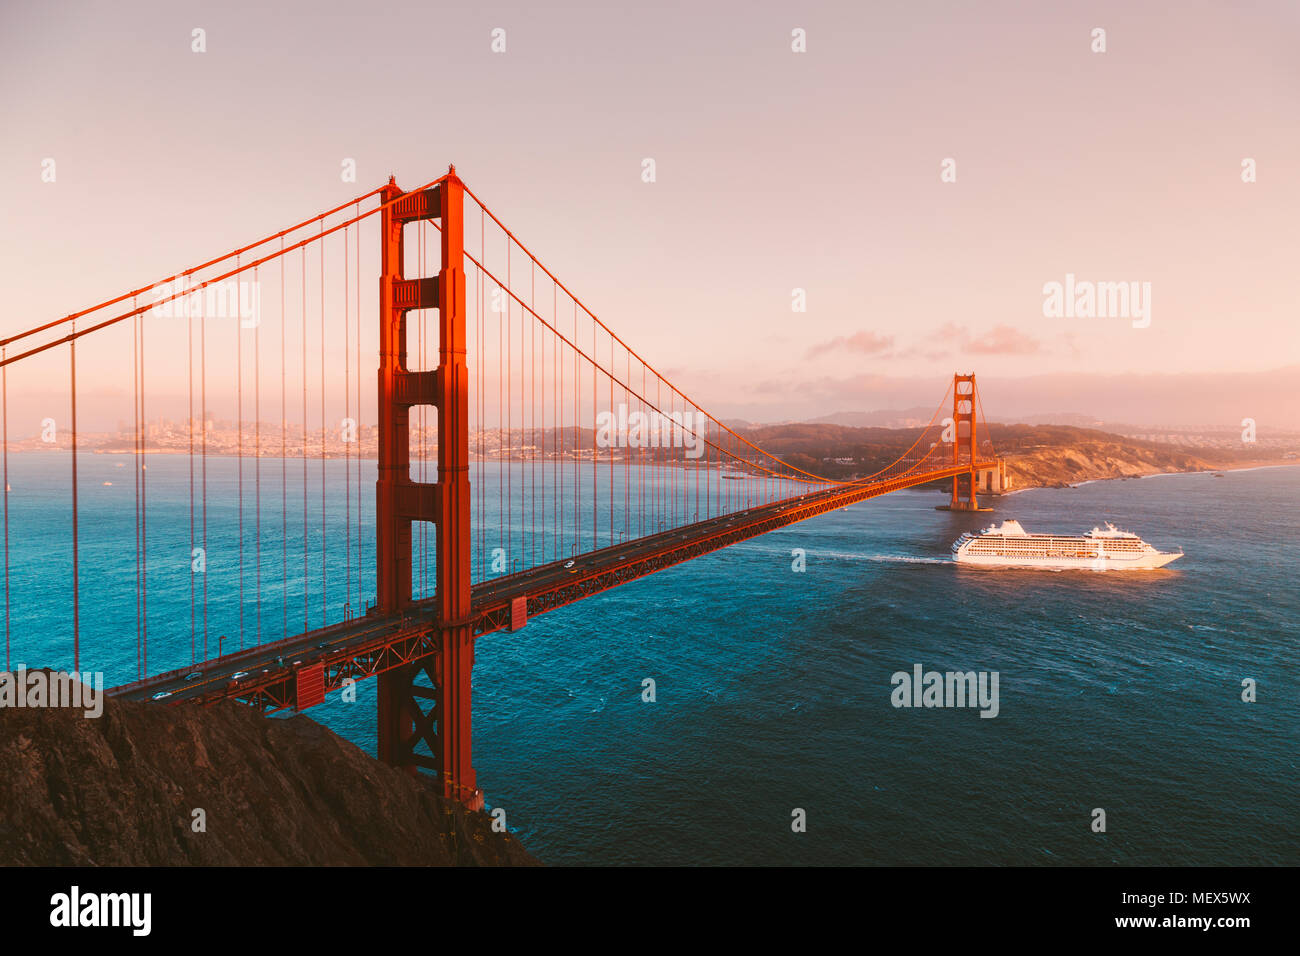 Schönen Panoramablick auf Kreuzfahrtschiff, die berühmte Golden Gate Bridge mit Blick auf die Skyline von San Francisco im Hintergrund bei Sonnenuntergang, Kalifornien Stockfoto